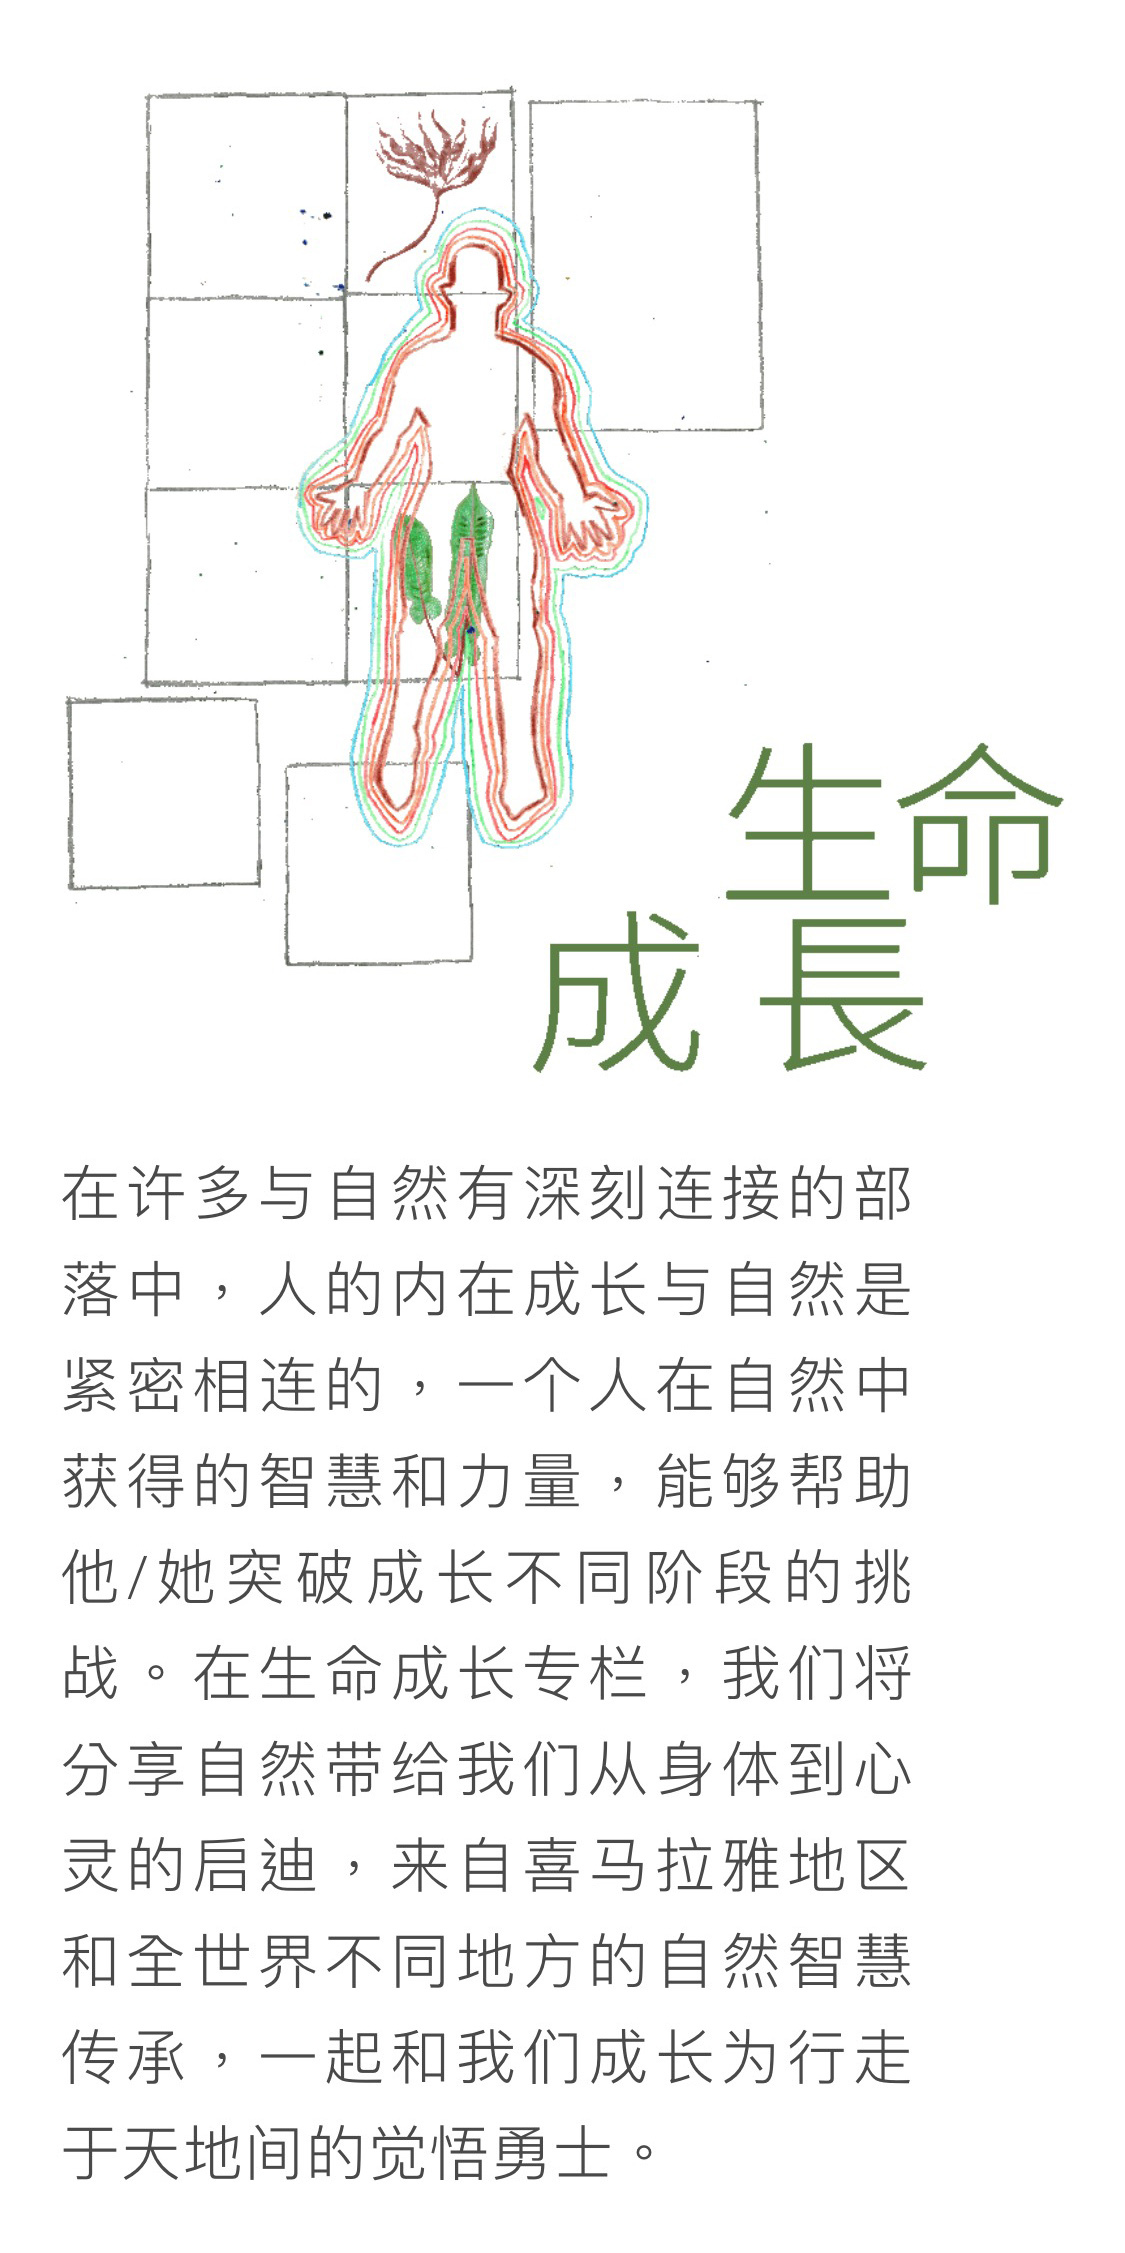 登龙云合森林学校 - 公众号形象设计/宣传视觉延展图4